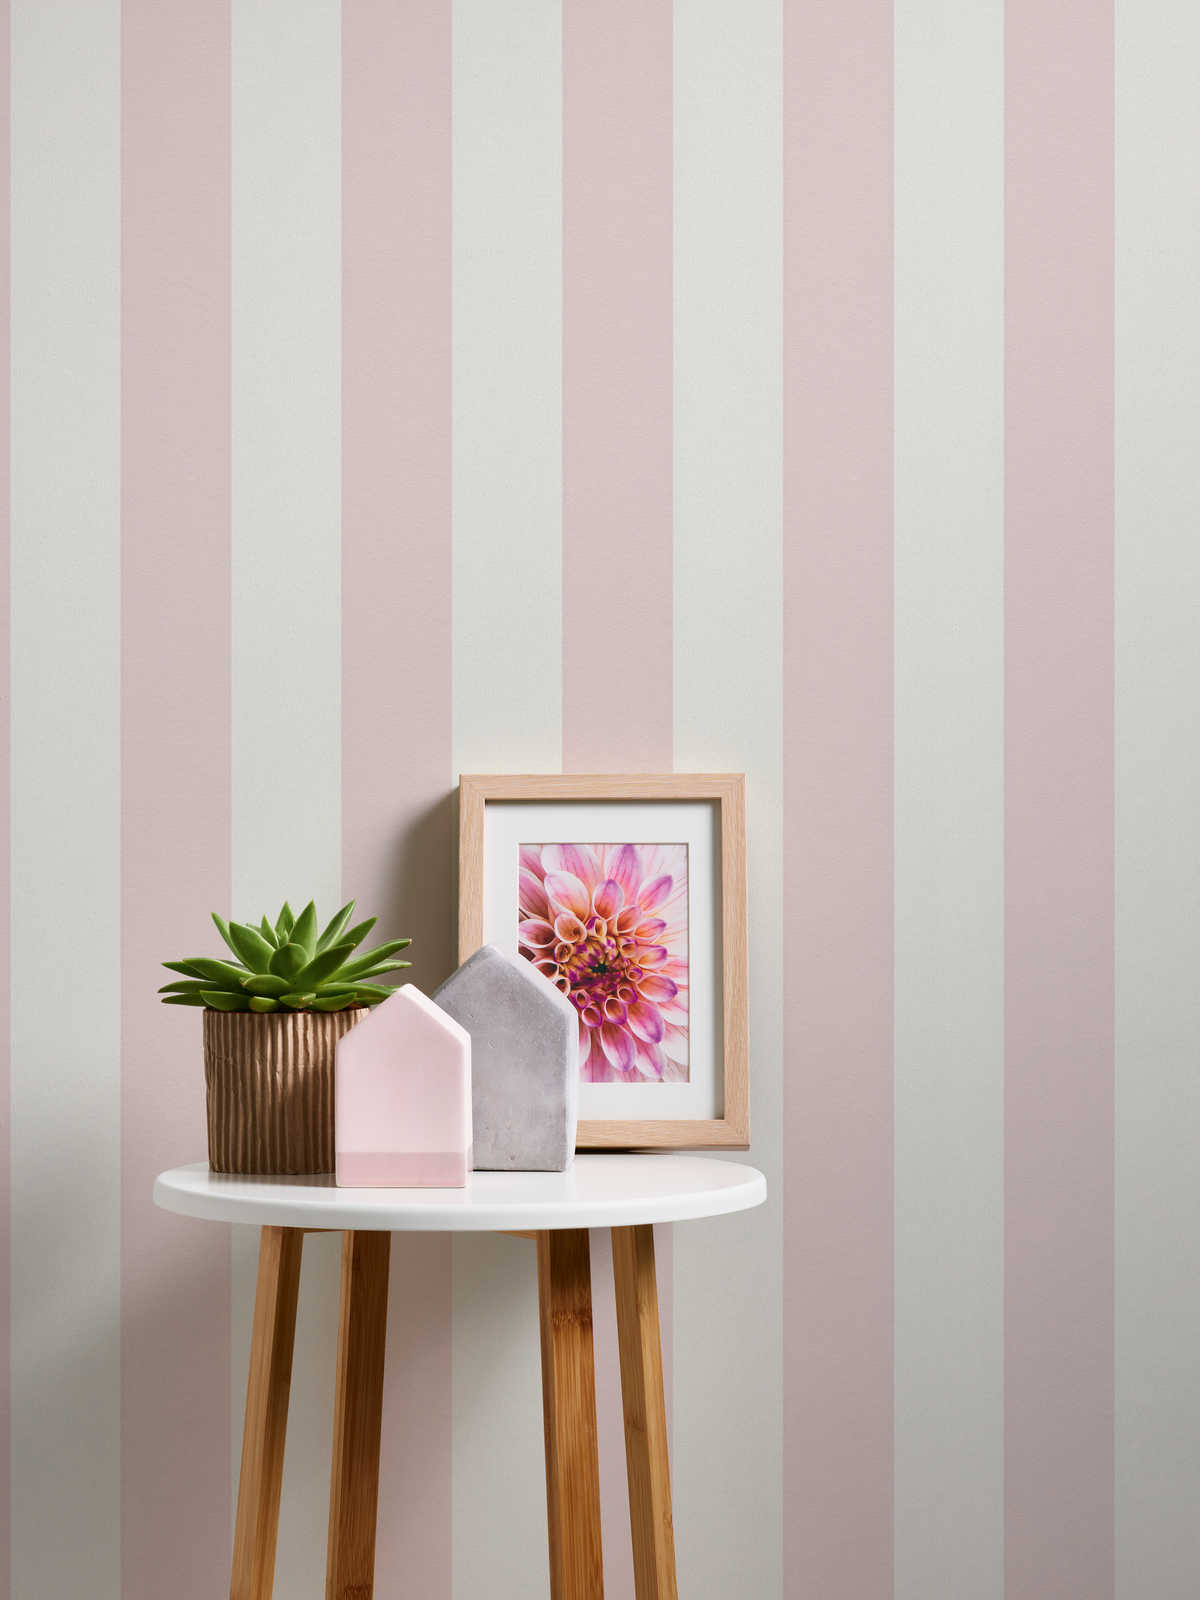             rayures Papier peint à motifs structurés, rayures en bloc rose & blanc
        